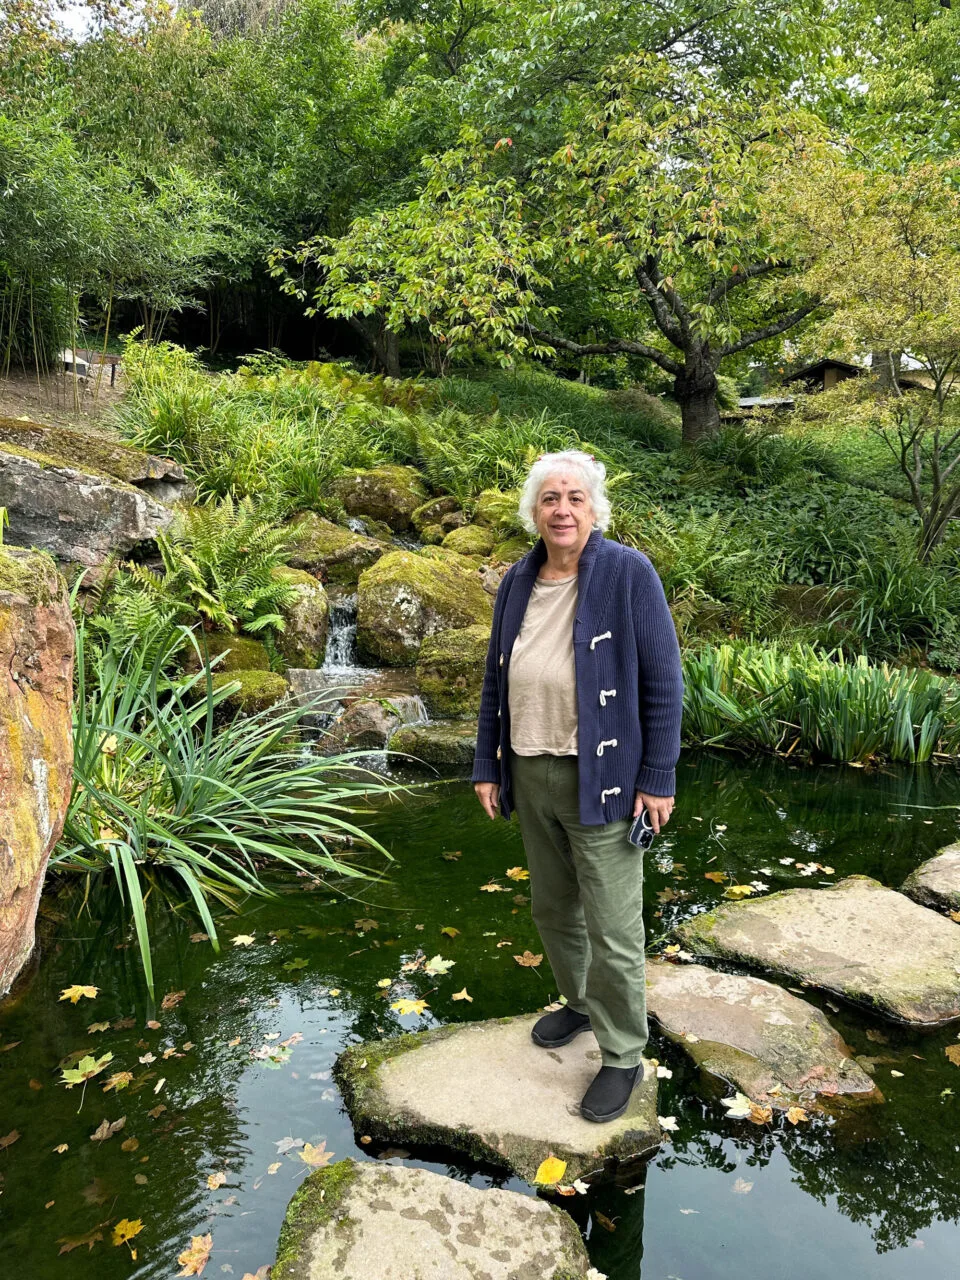 Corinne enjoying Kaiserslautern's Japanese garden.